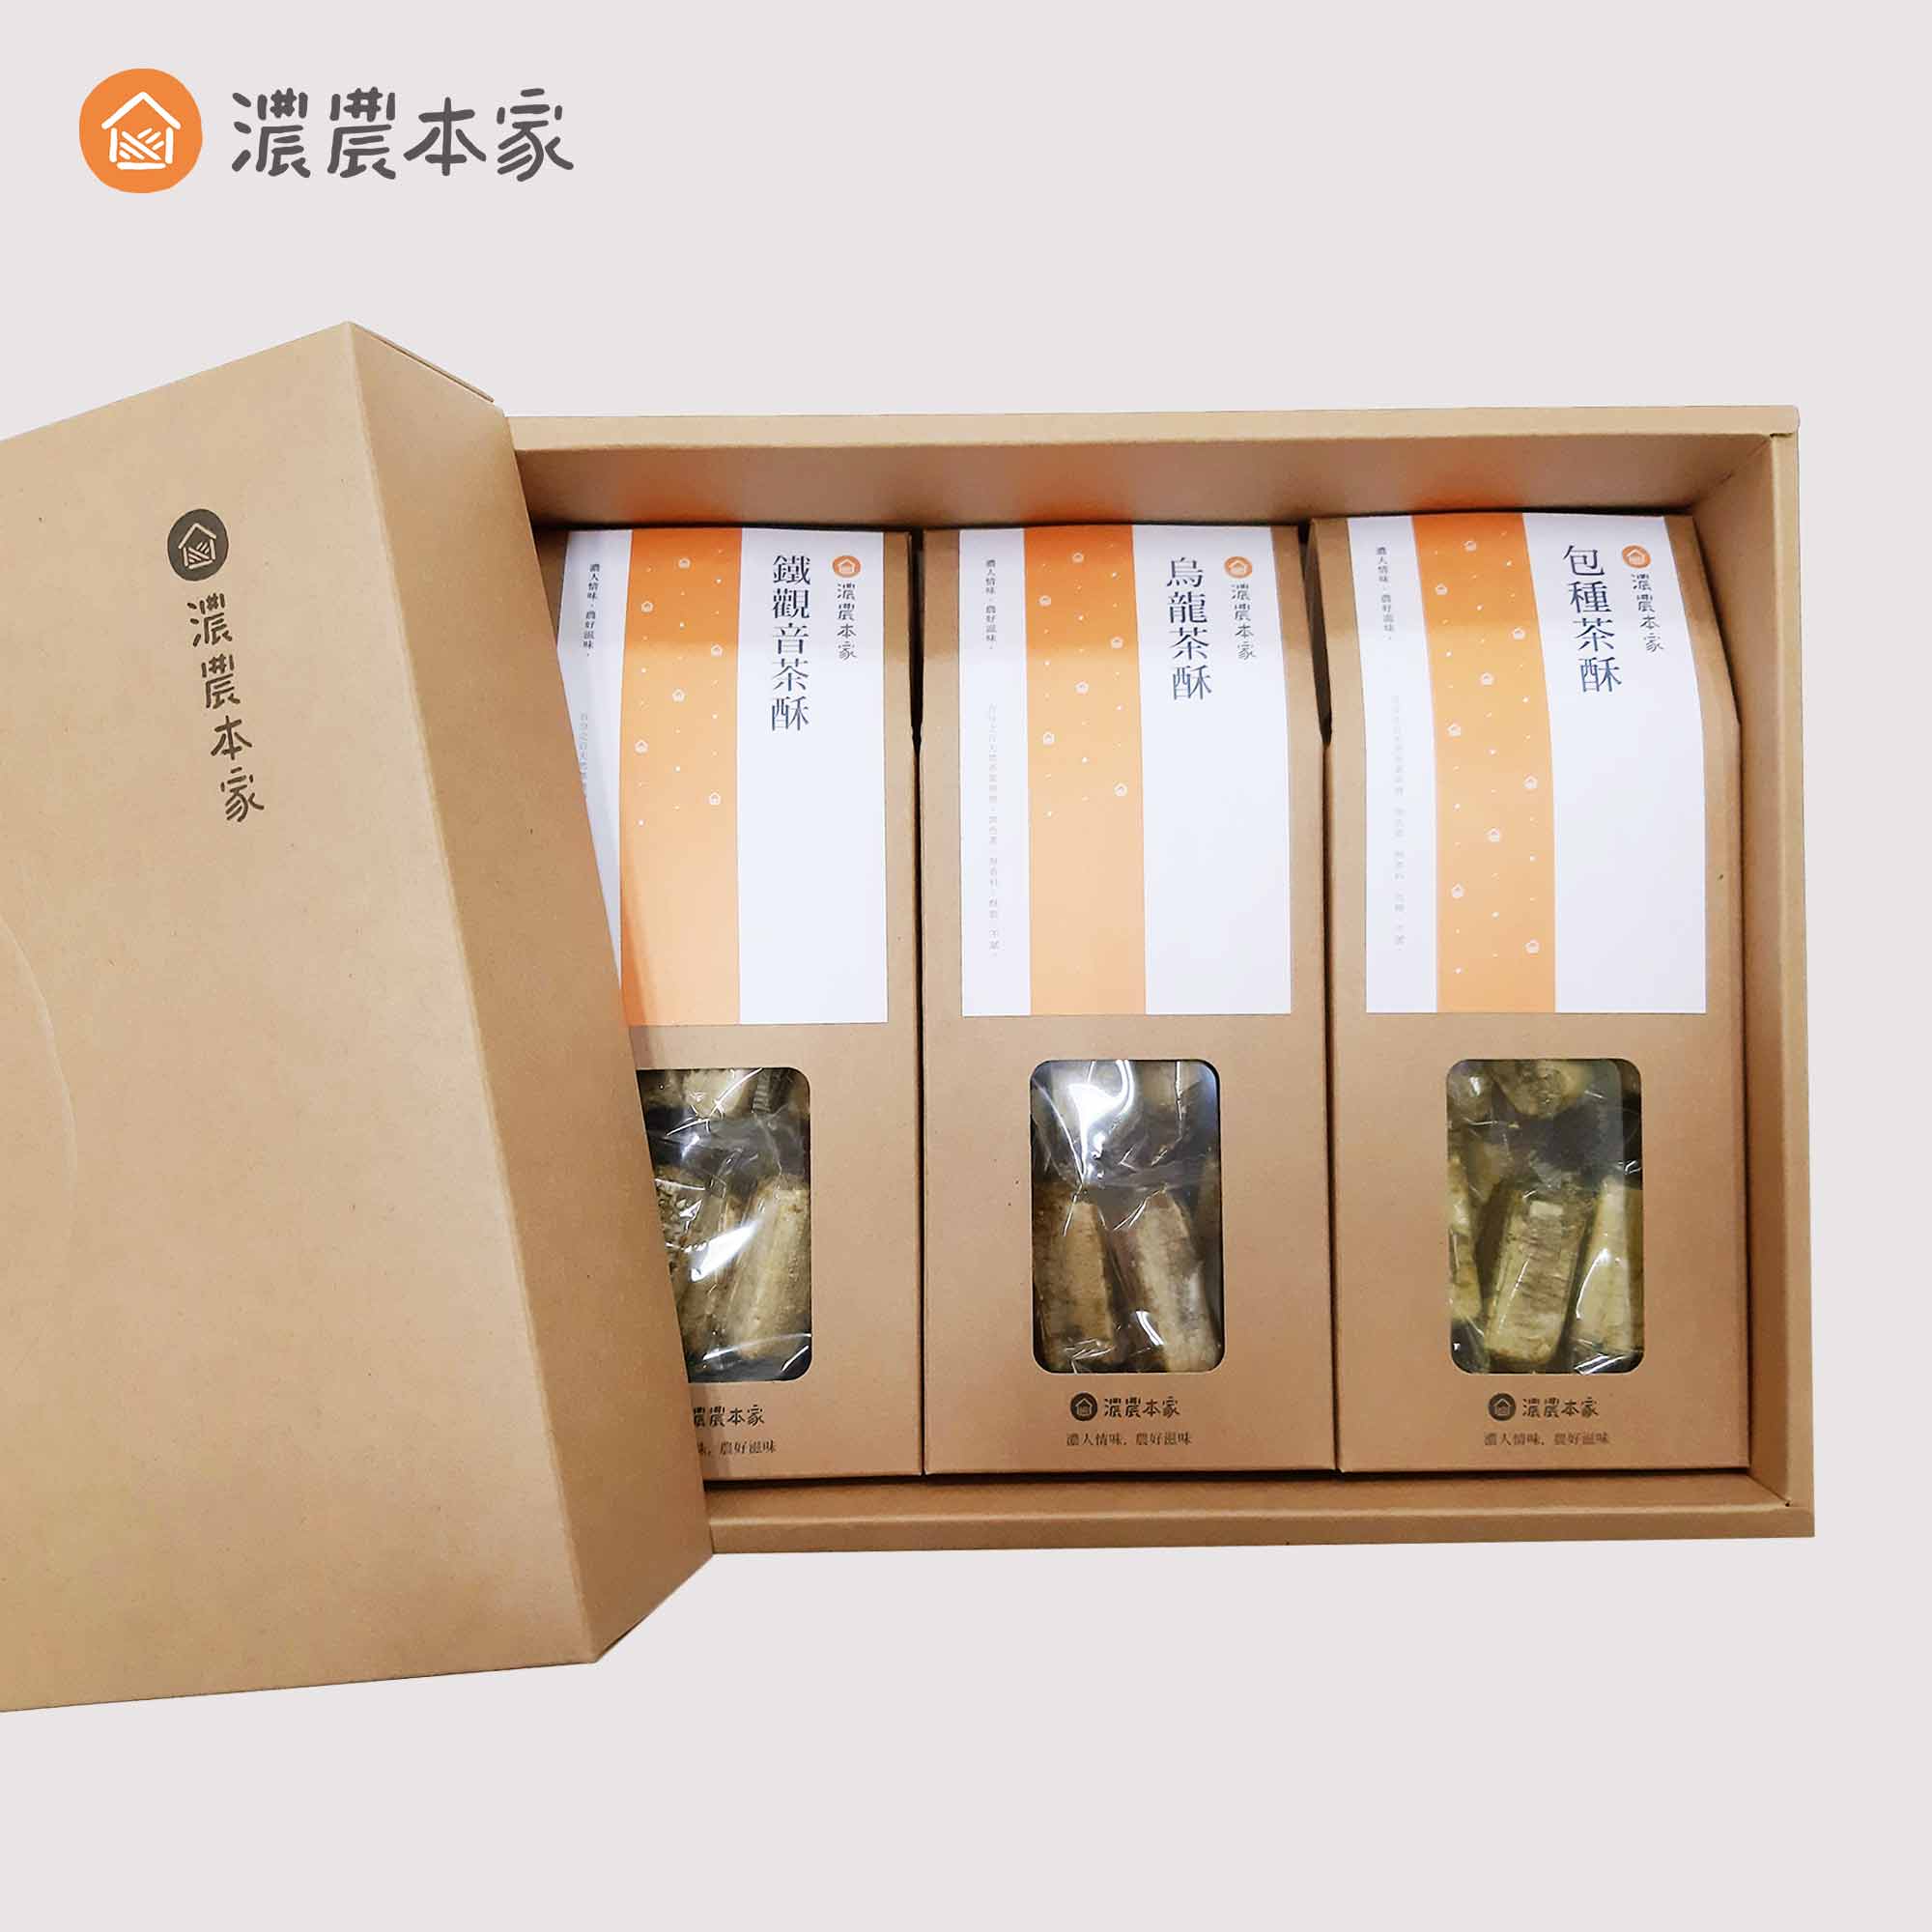 人氣過年禮盒推薦平價CP值高的台灣特產茶酥禮盒